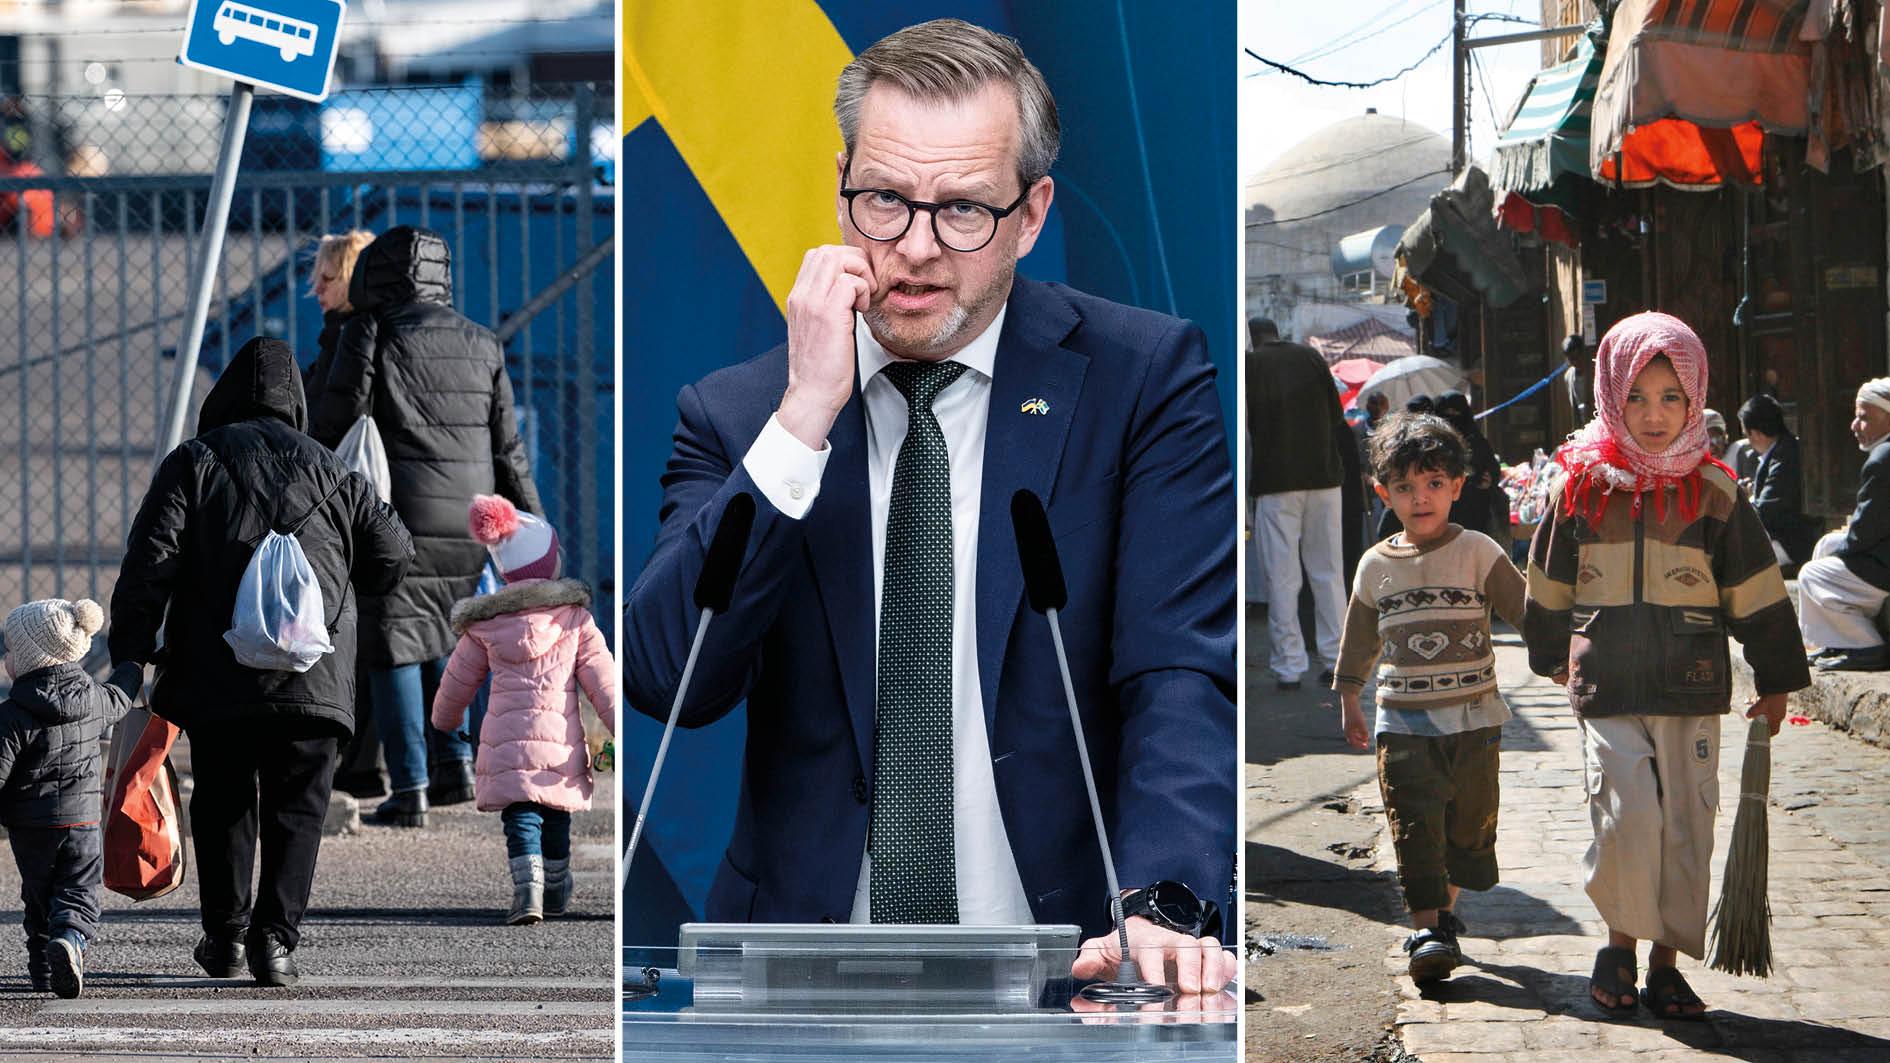 Finansminister Mikael Damberg har meddelat att flyktingmottagandet ska finansieras med avräkningar på Sveriges bistånd. Vår uppmaning lyder; lämna inte världens fattiga med notan för solidariteten med Ukraina. Sverige kan bättre och har råd, skriver 15 S-profiler.